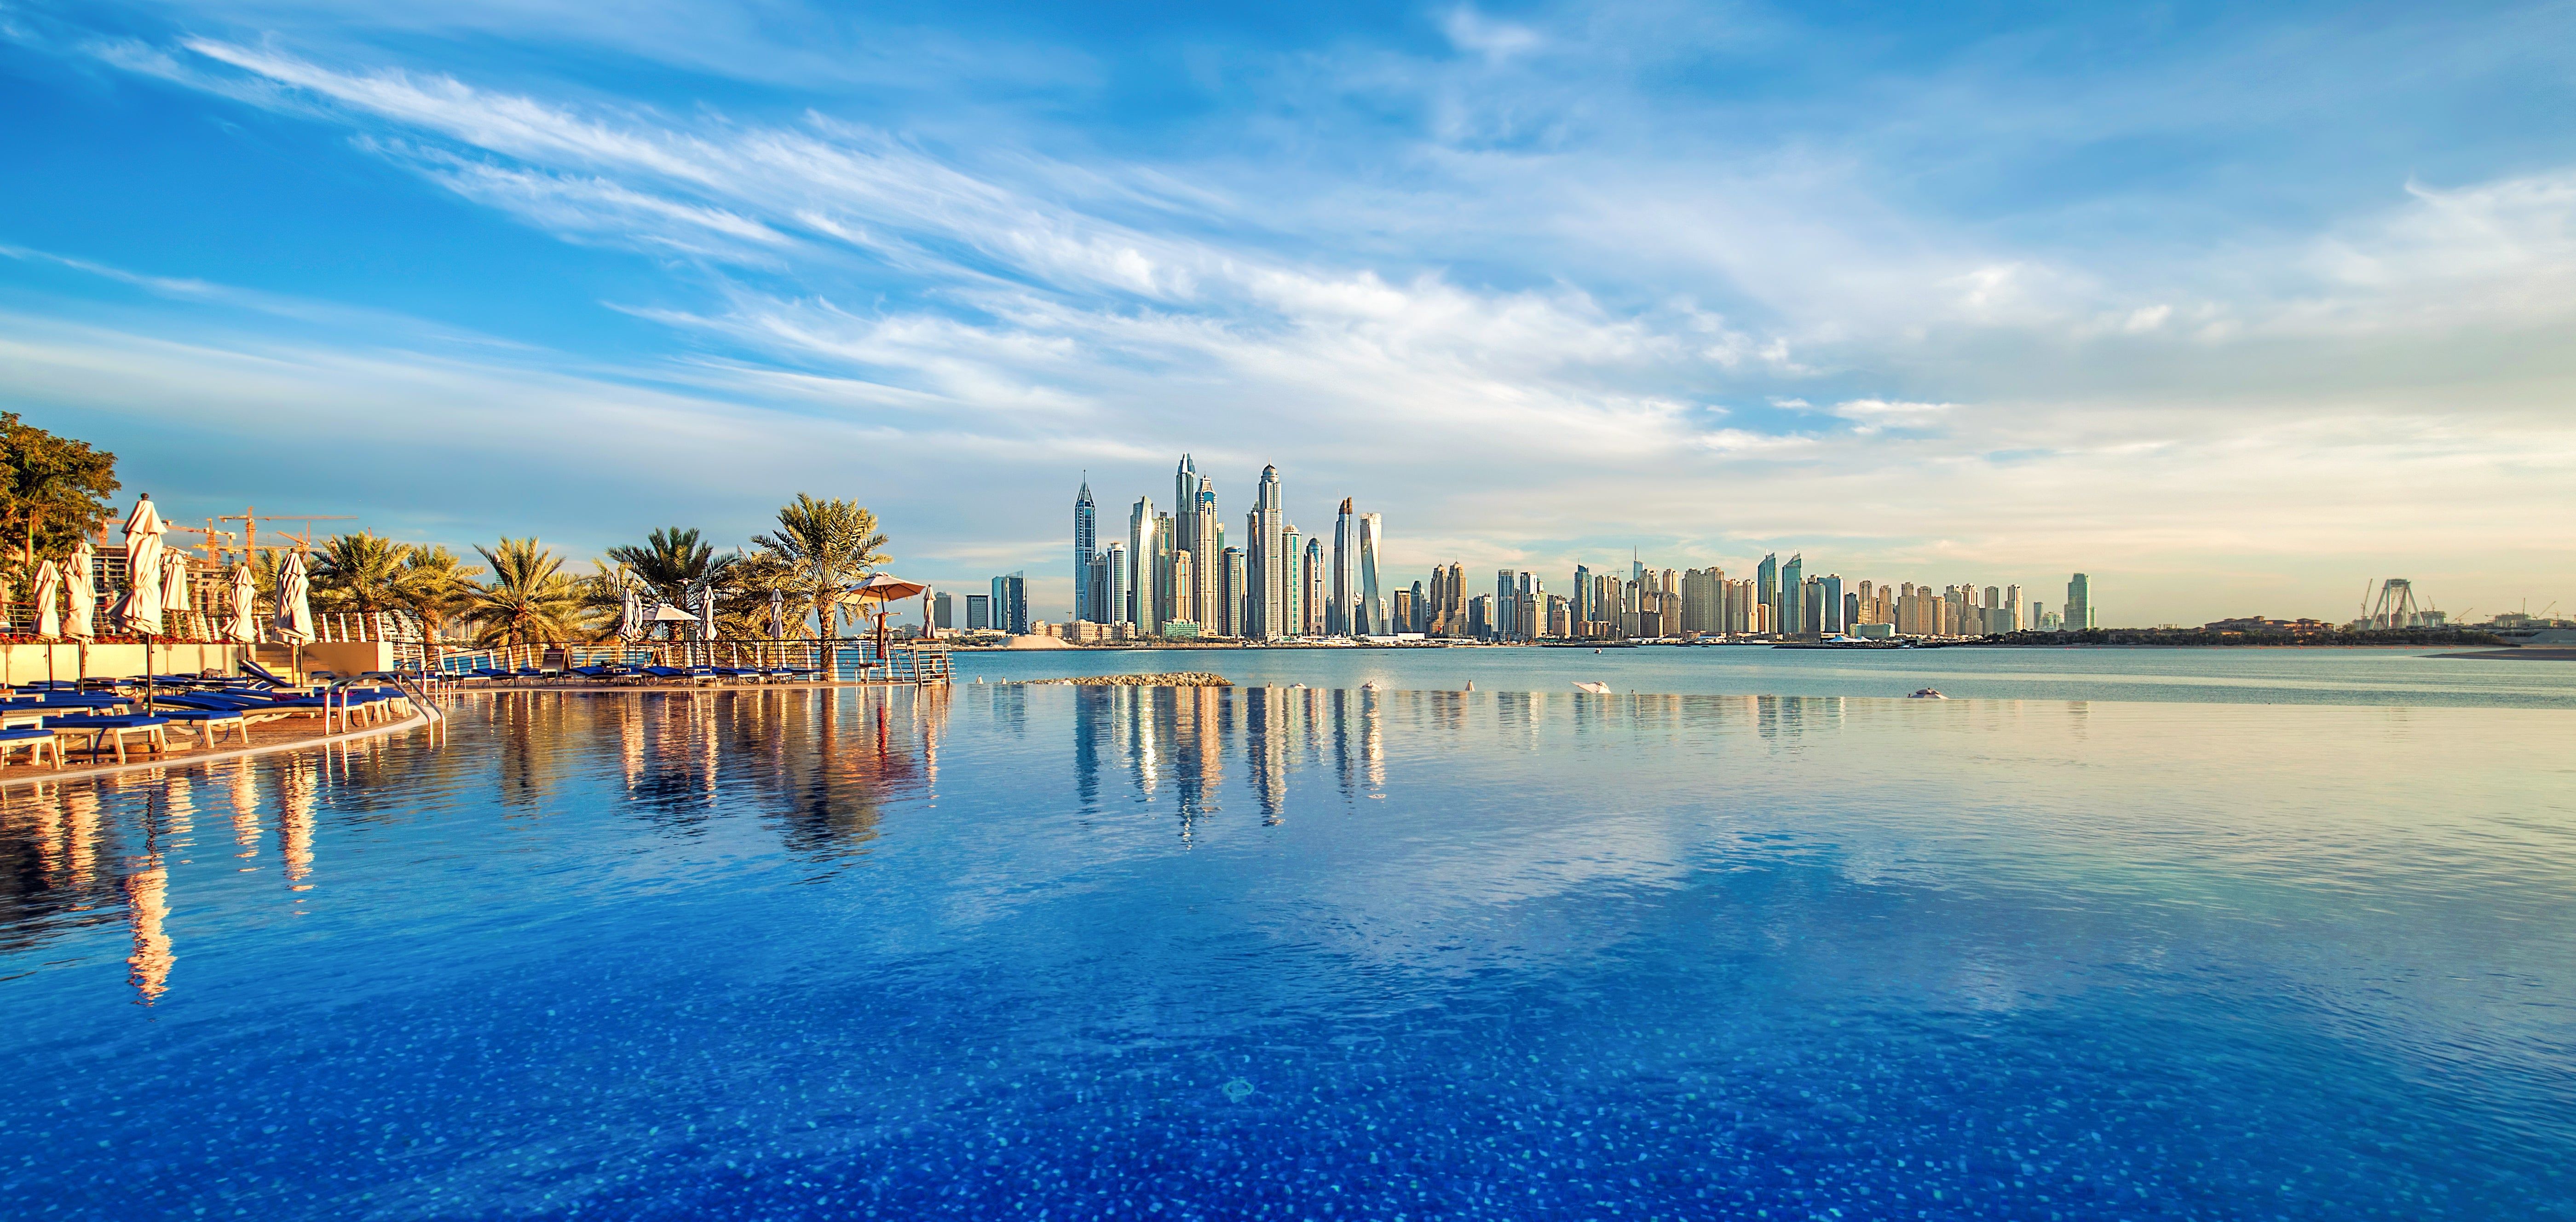 Holidays to Dubai 2023 from £491 loveholidays